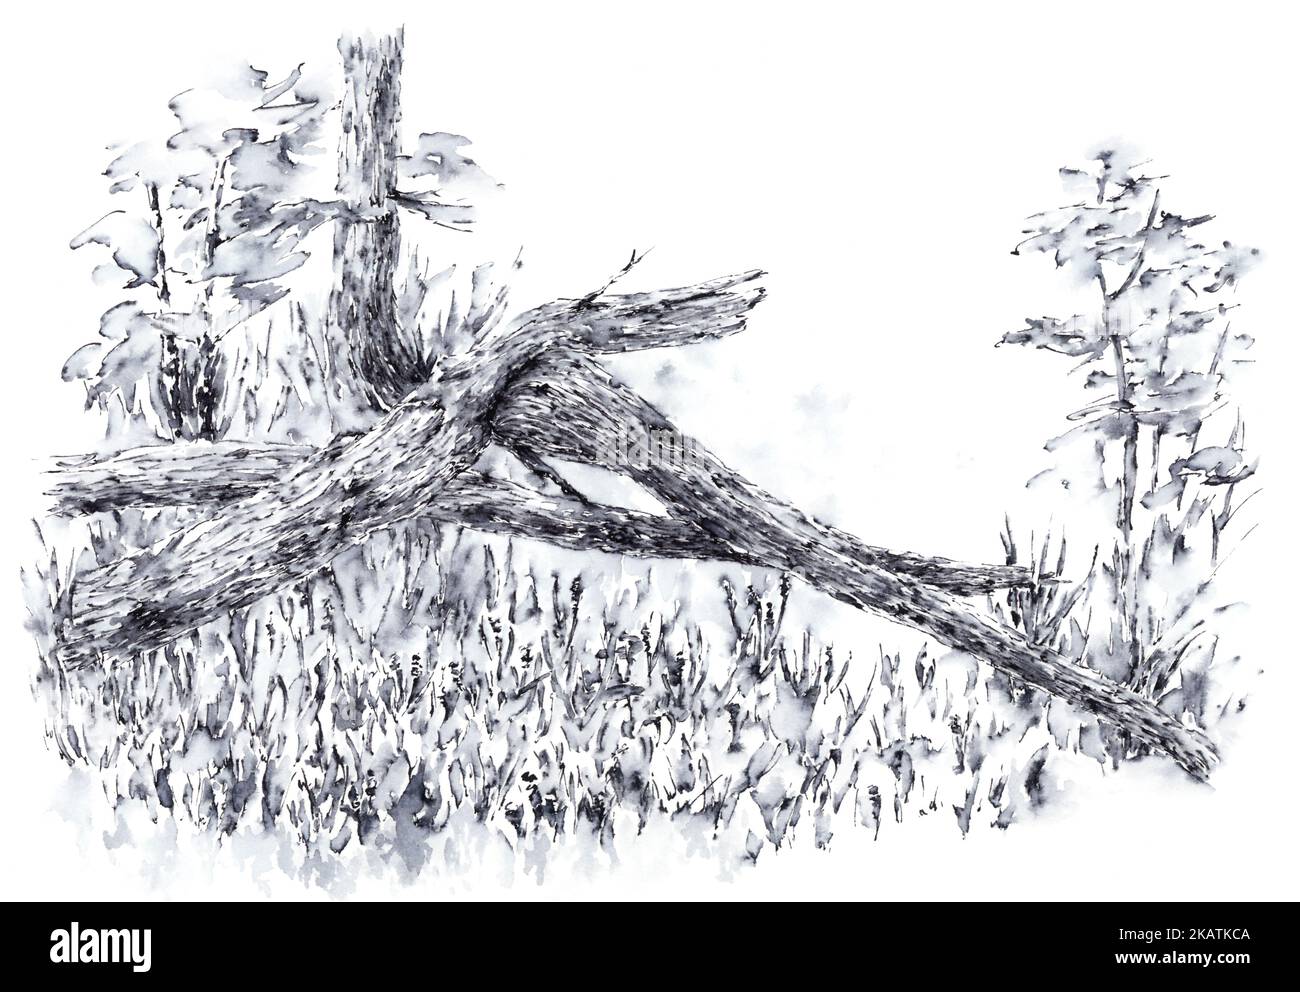 Baum zeichnen Ausgeschnittene Stockfotos und -bilder - Seite 2 - Alamy